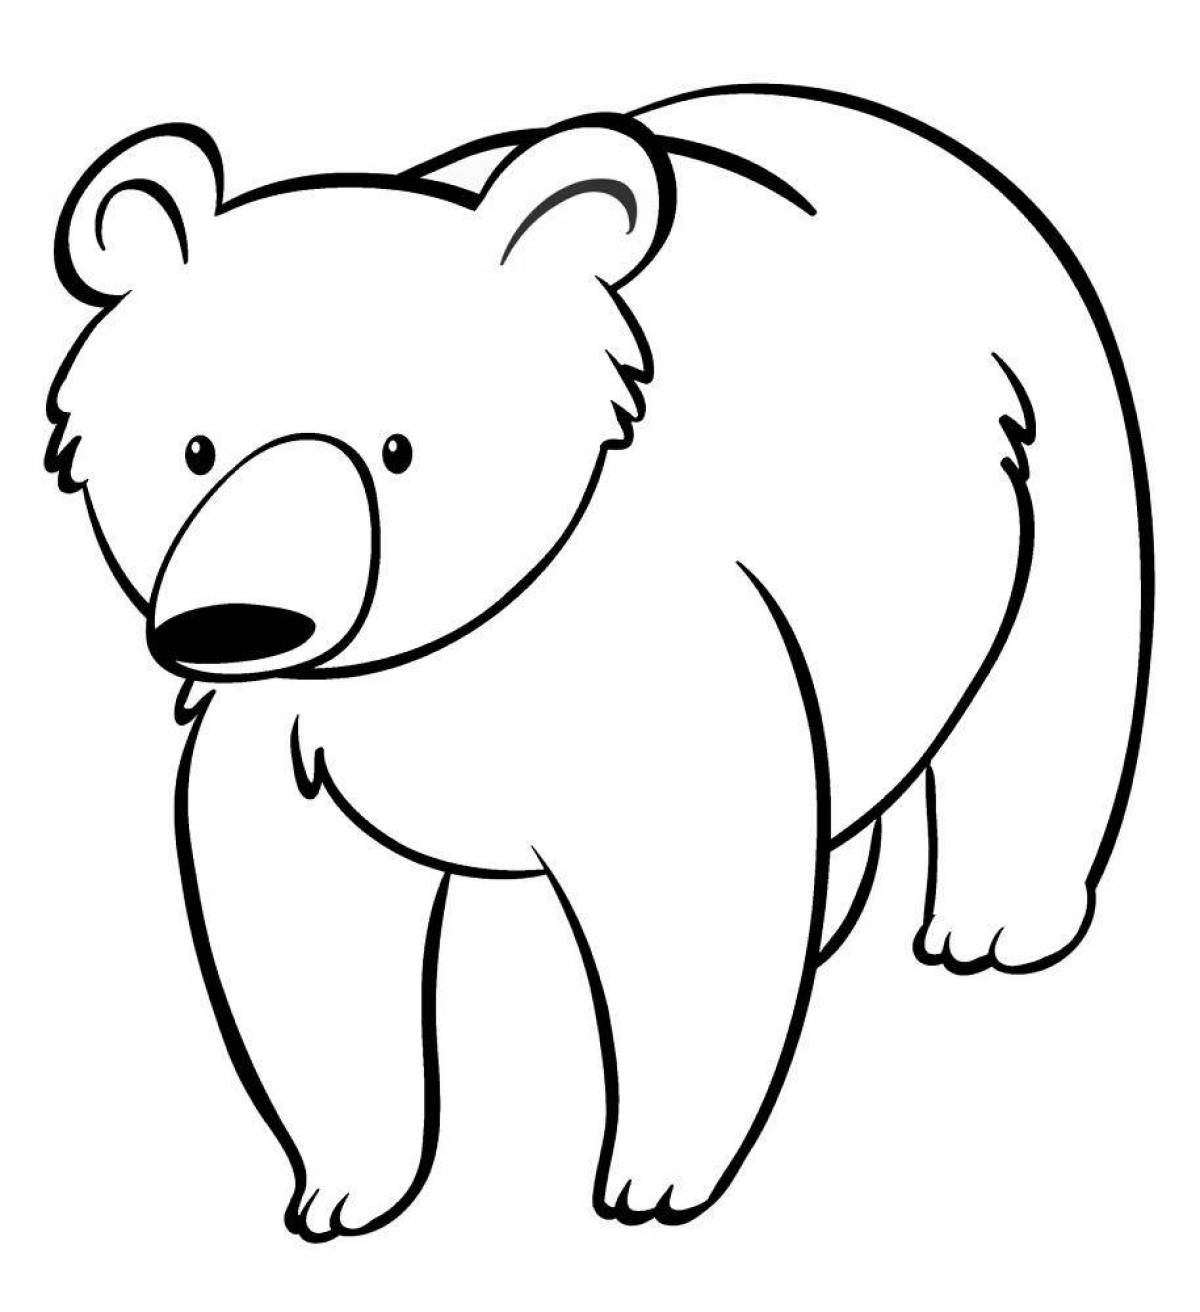 Раскраска медведь для детей 2 3 лет. Медведь раскраска. Раскраска. Медвежонок. Медведь раскраска для детей. Медведь картинка для детей раскраска.